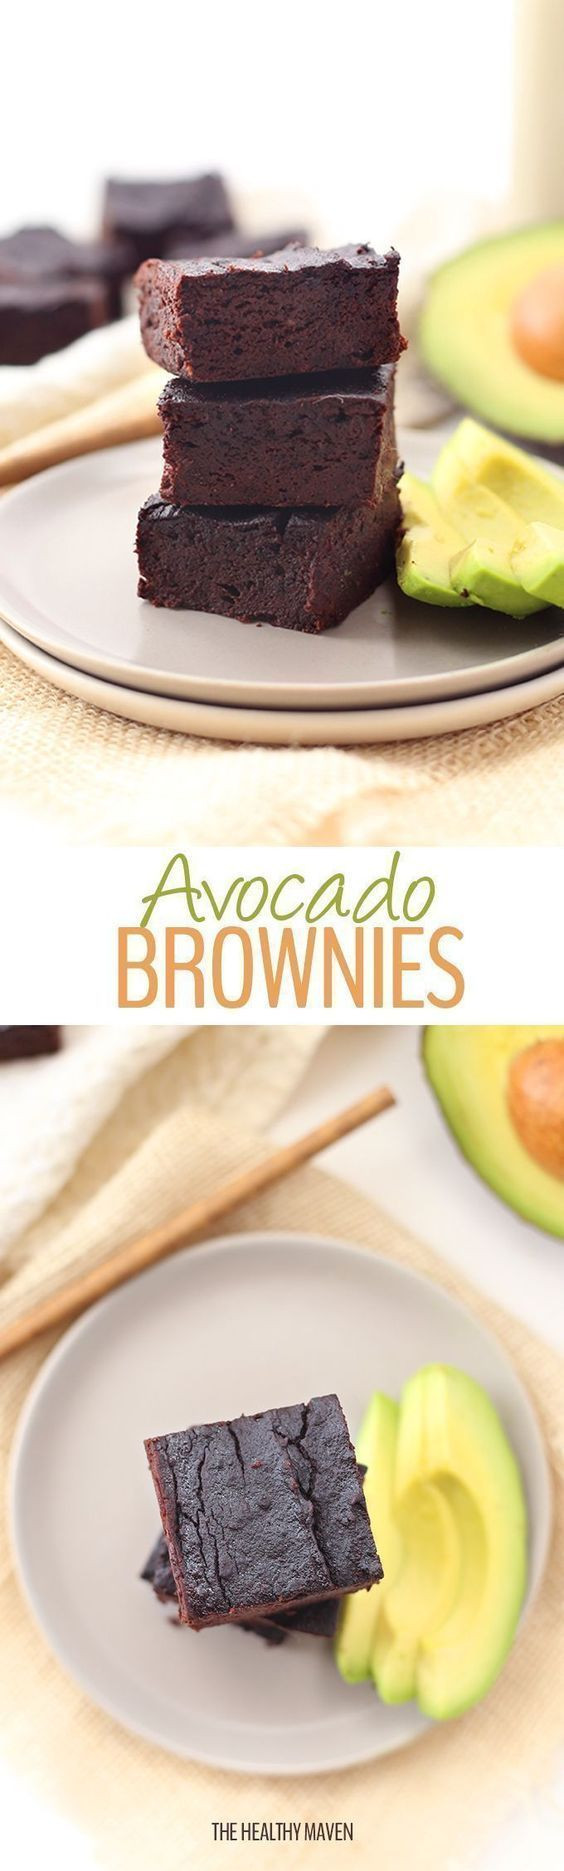 Healthy Avocado Brownies
 Best 25 Avocado brownies ideas on Pinterest